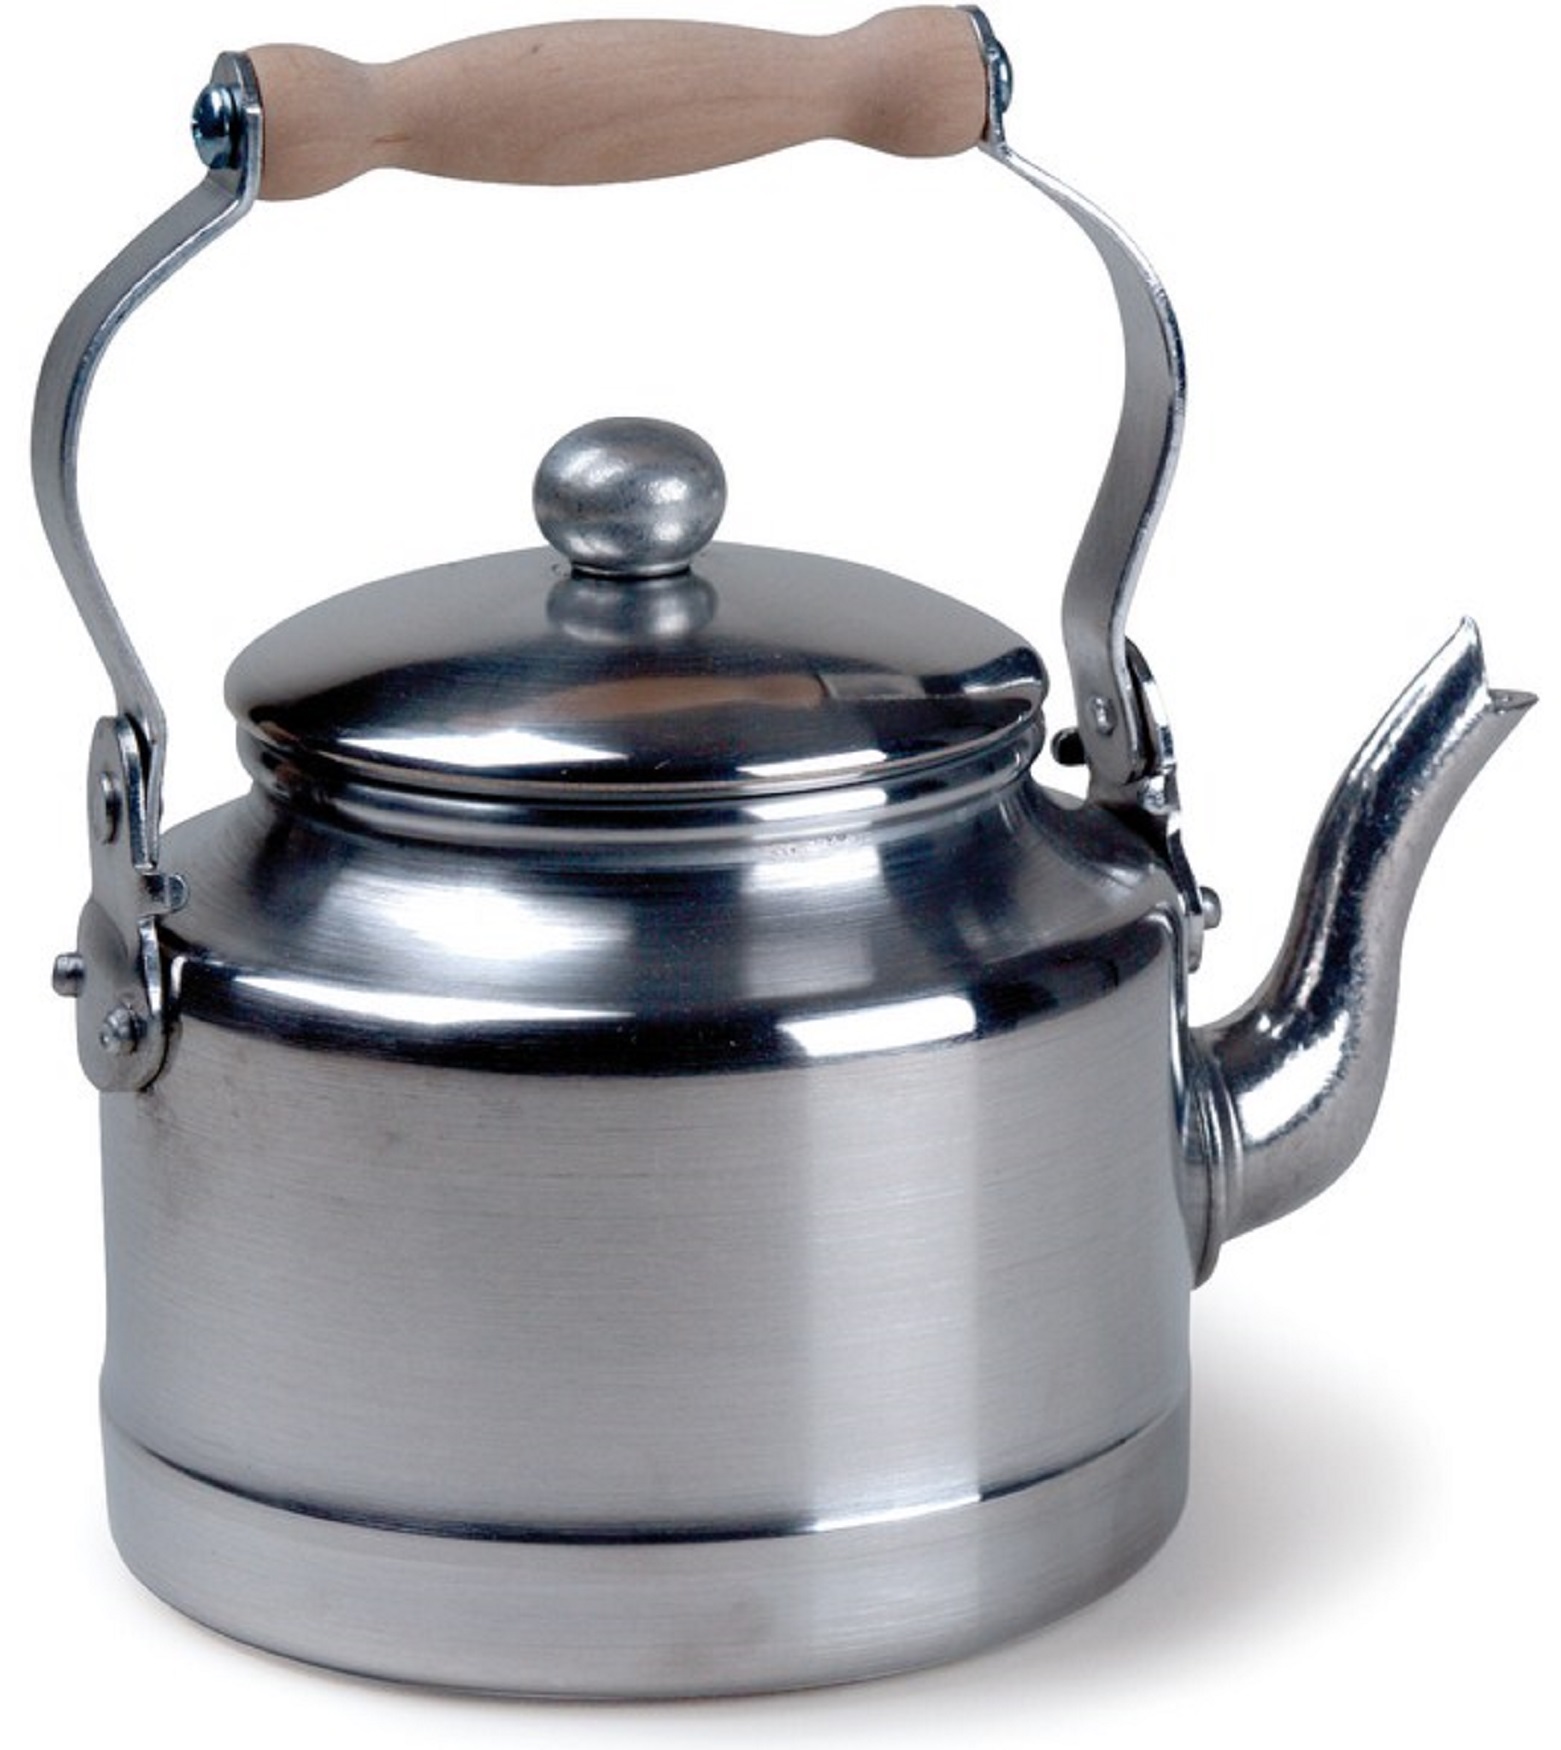 Чайник для плиты с толстым дном. Чайник эрг-ал (3 л). Чайник Кухар КЧ-30н. Чайник для плиты Werner Revere 50149. Чайник Stainless Steel Zhujie kettle.